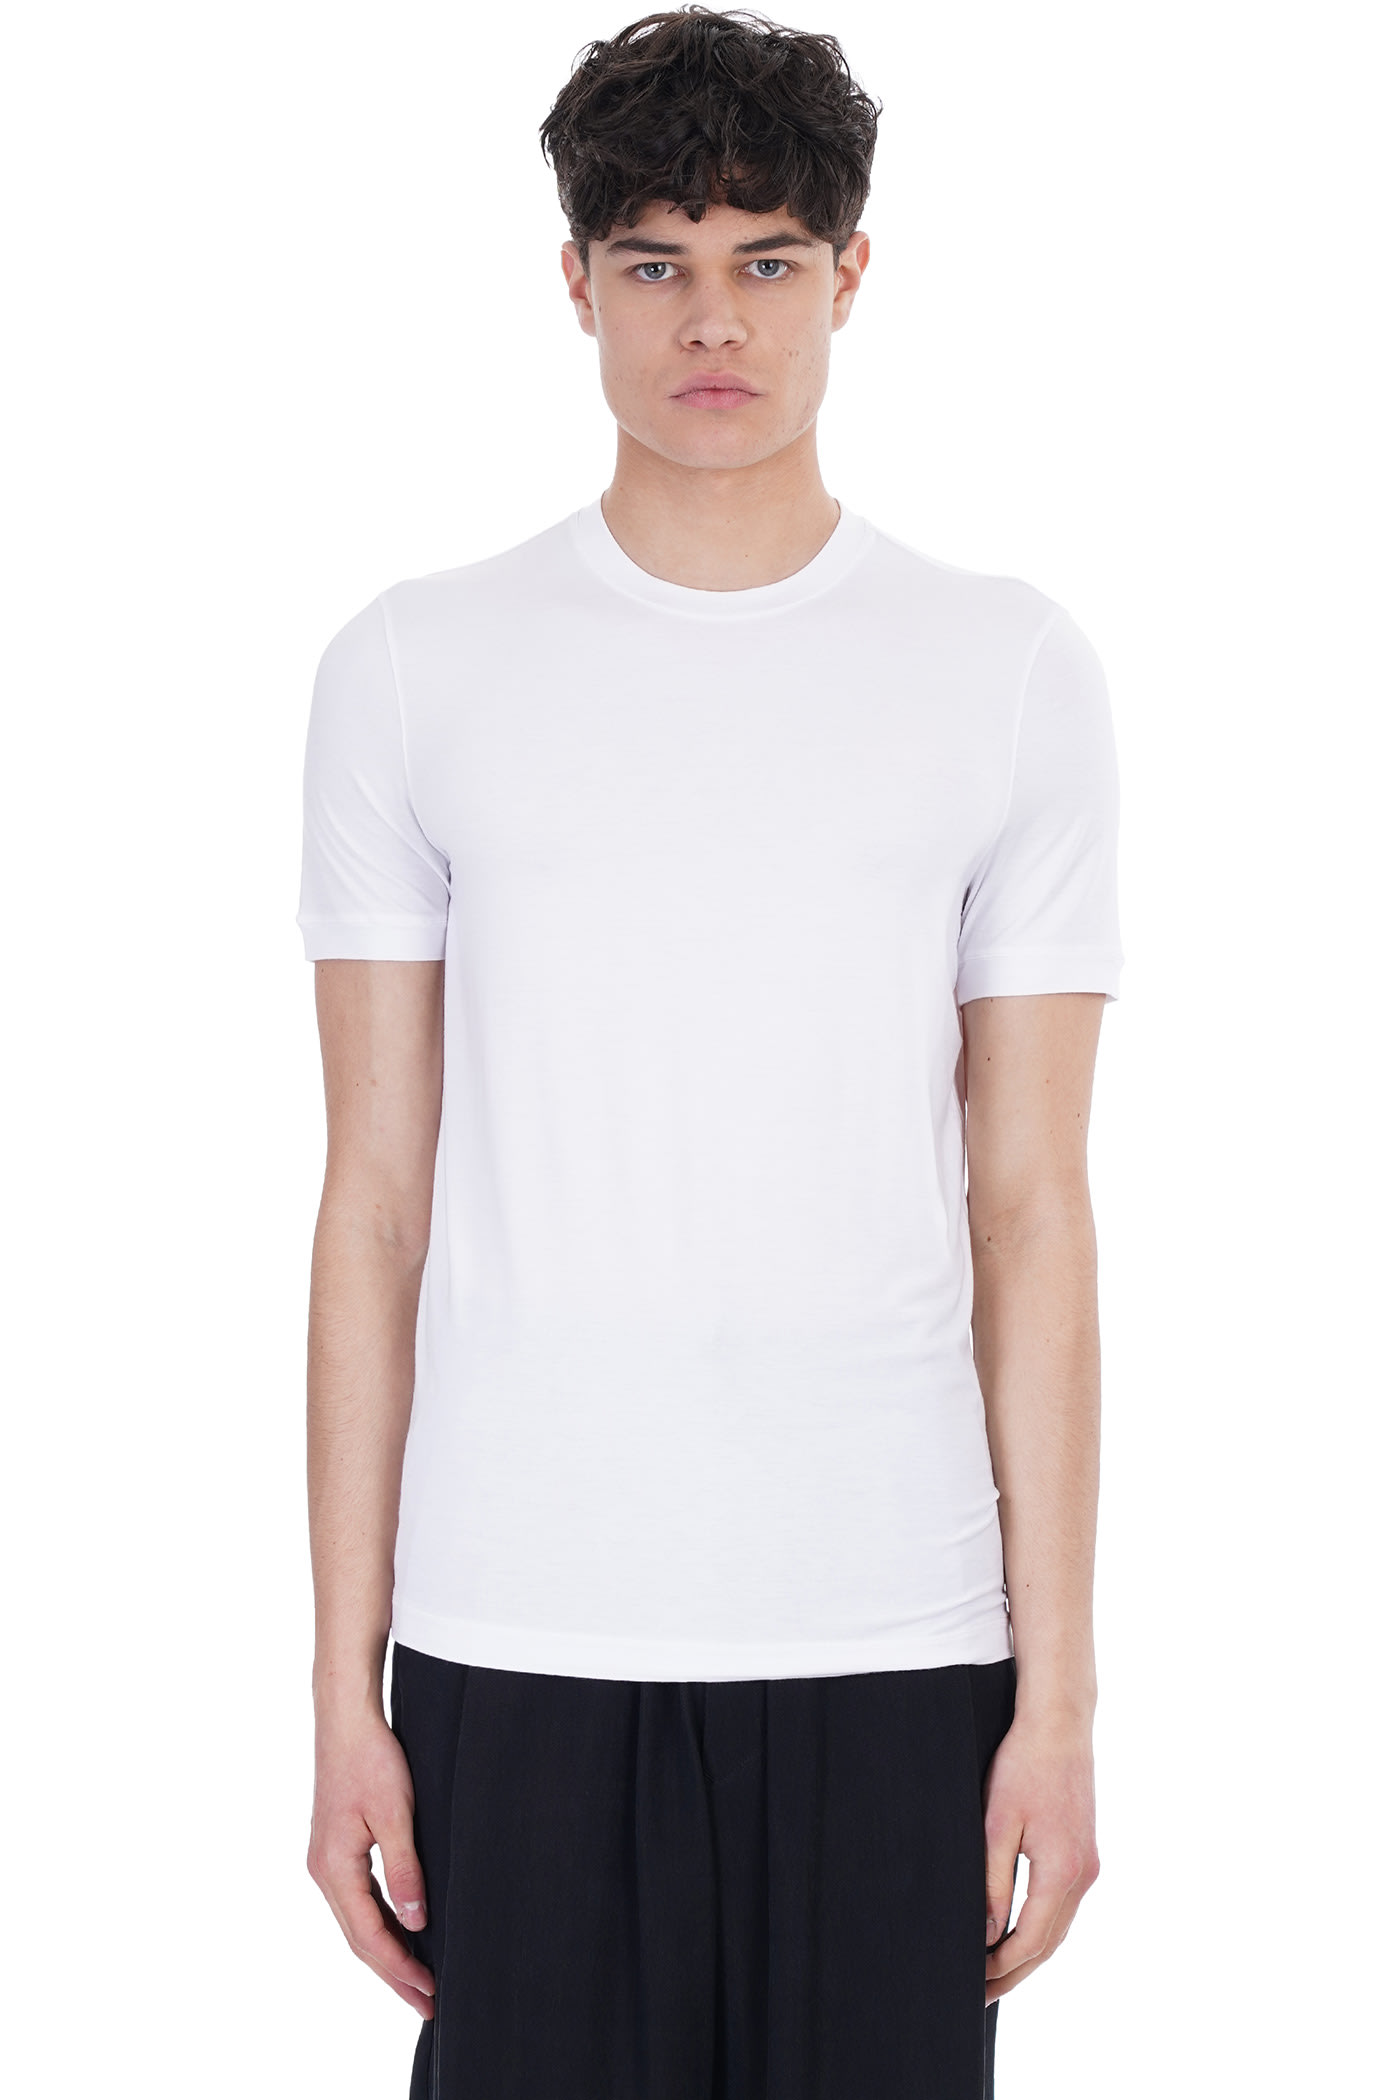 Giorgio Armani T-shirt In White Viscose